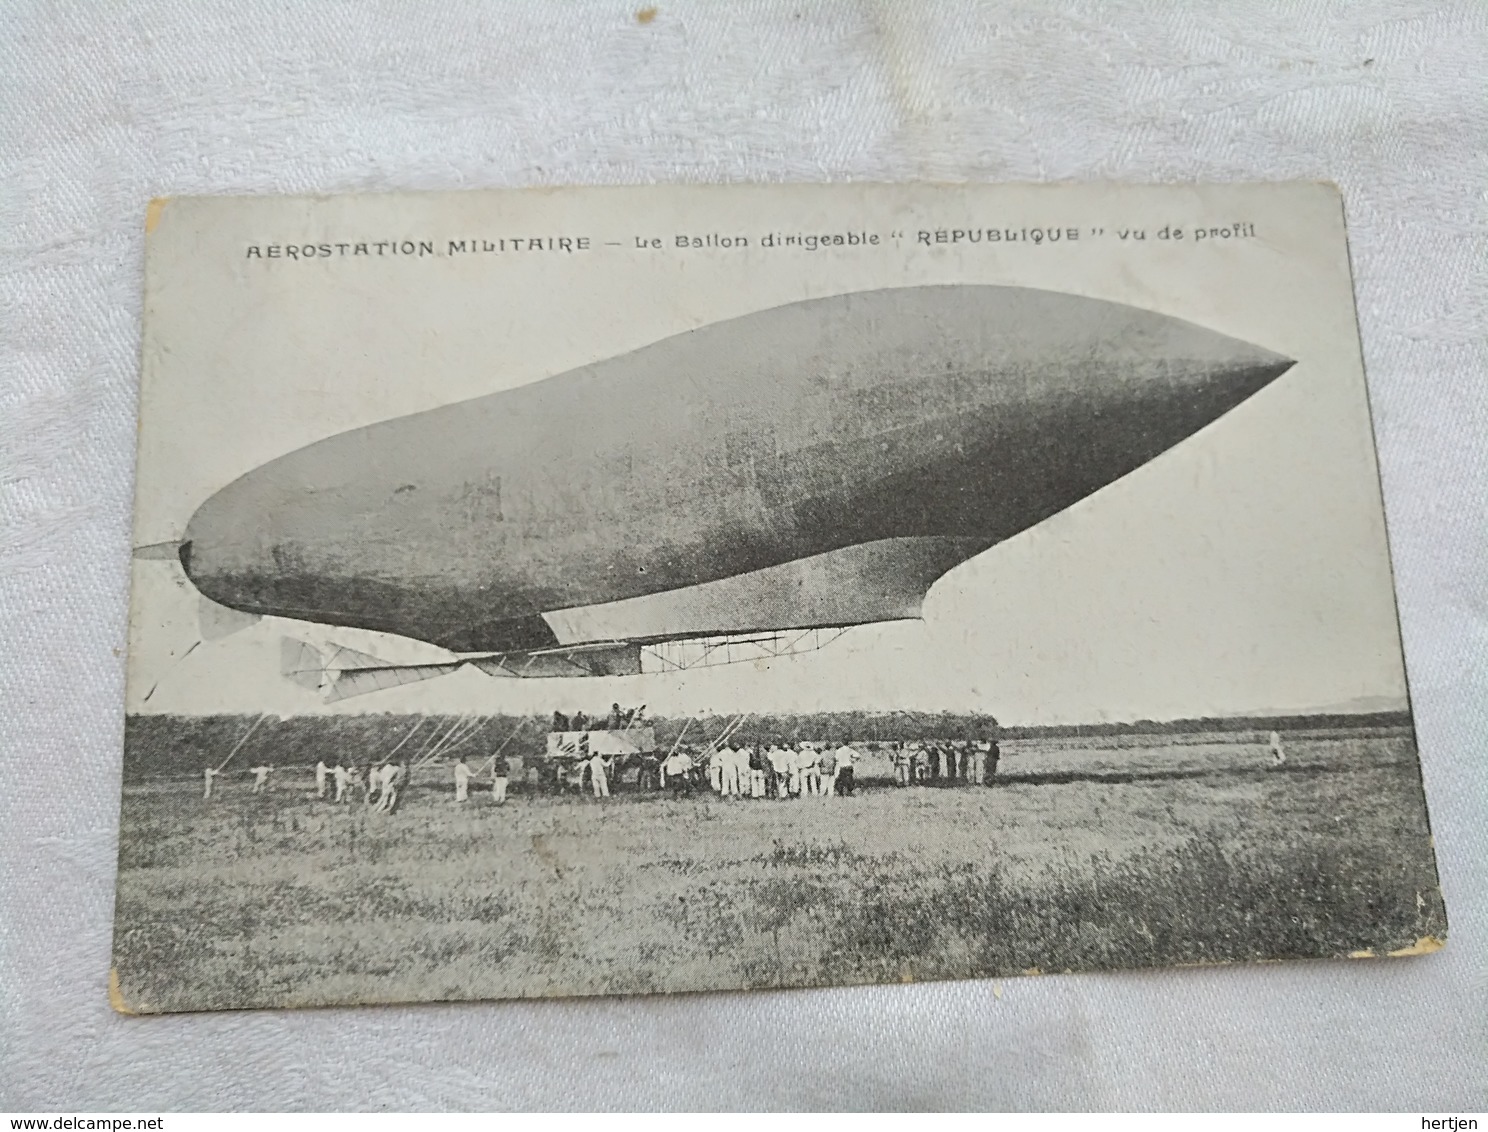 Zeppelin's Luftschiff, Aerostation Militaaire Le Ballon Dirigeable Republique Vue De Profil - Dirigeables